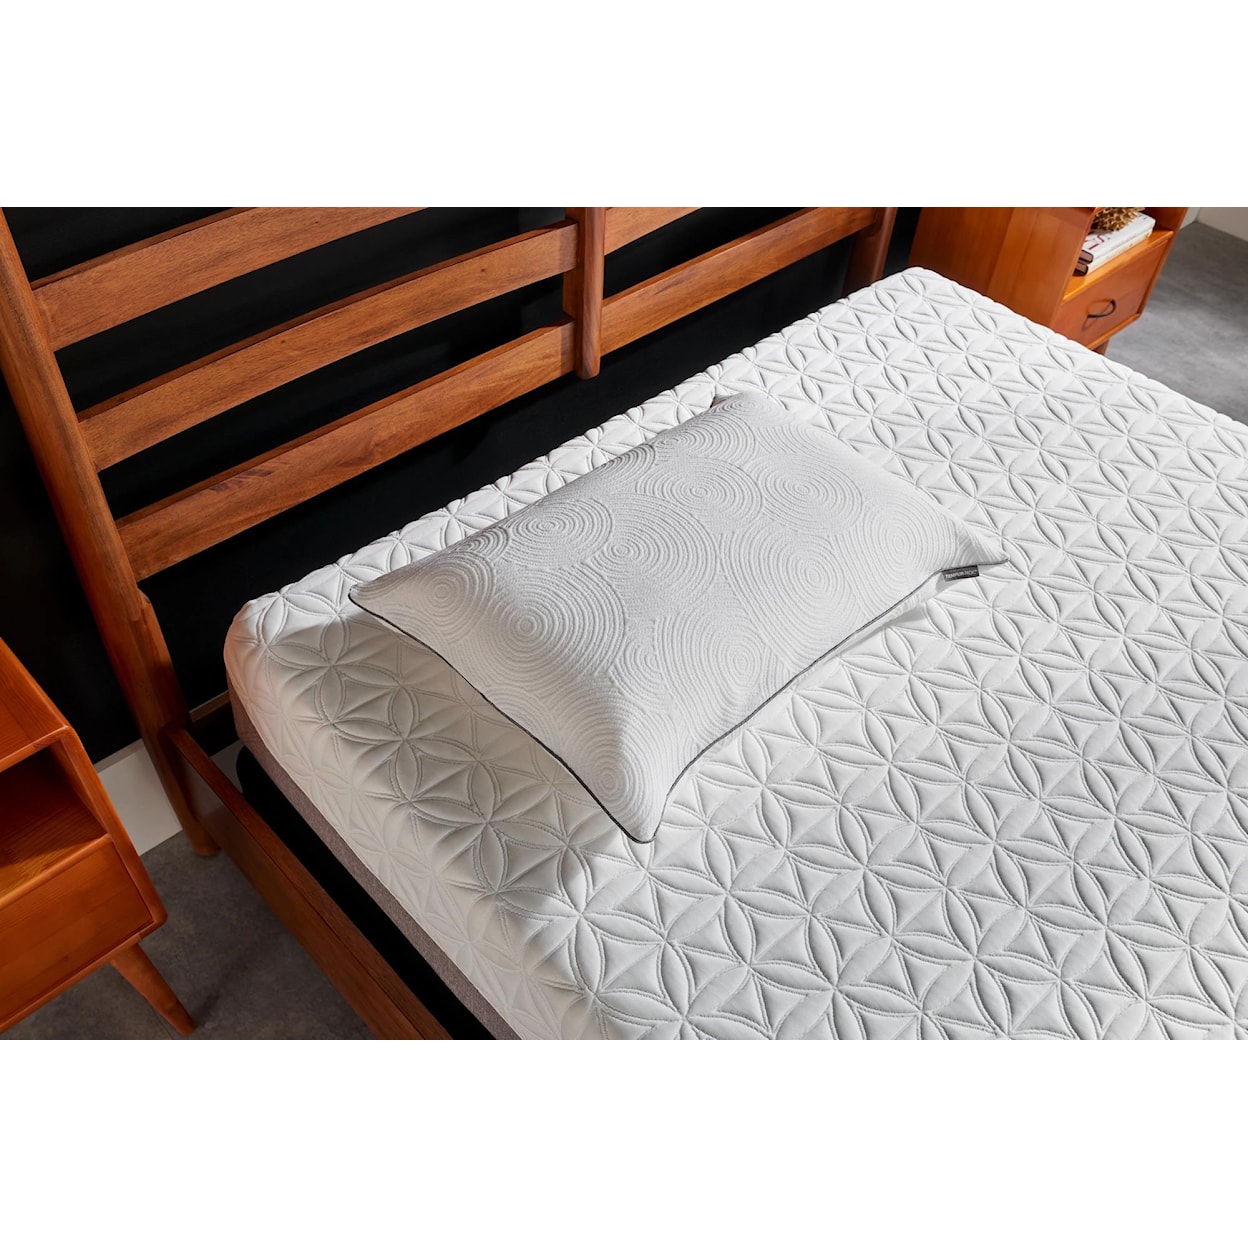 Tempur-Pedic® Tempur-Protect Queen Pillow Protector